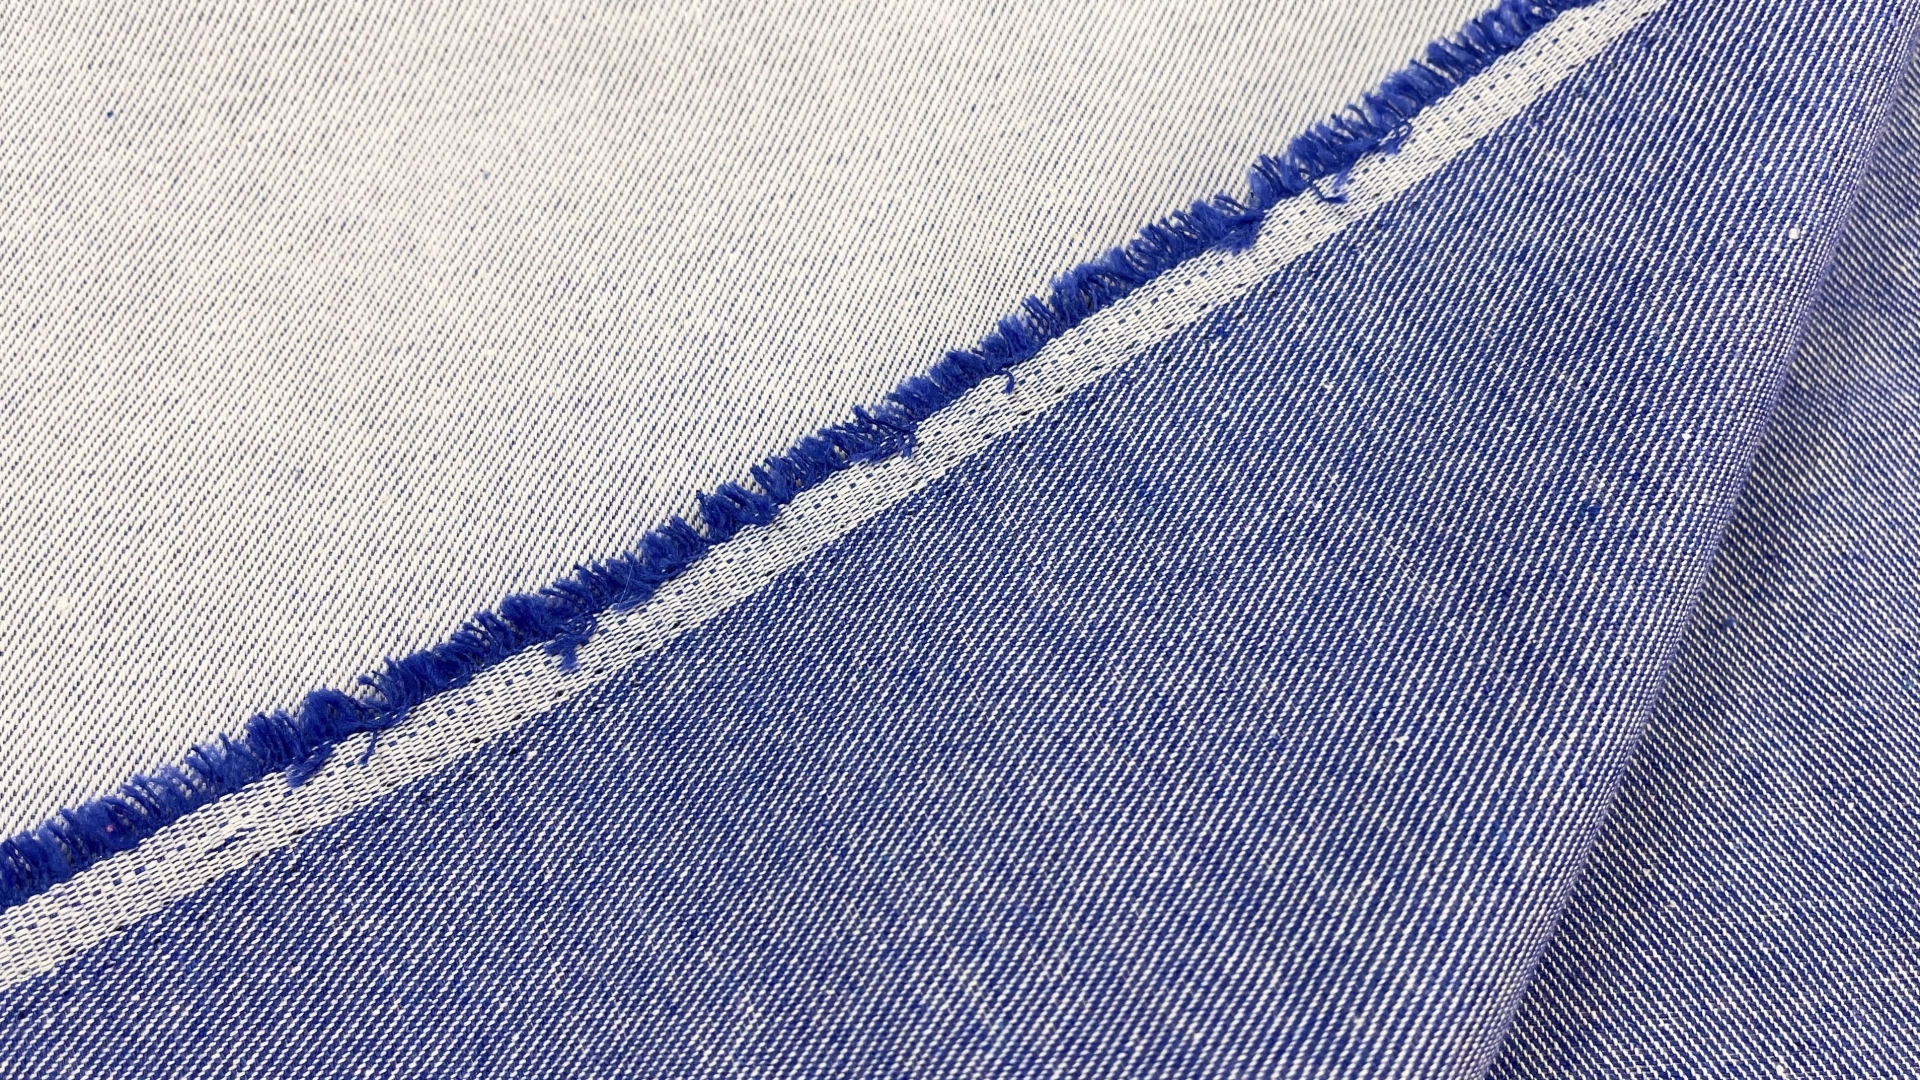 Двусторонний джинс с выраженным рубчиком ярко-синего цвета. Подойдет для пошива летних джинс, куртки или юбки.